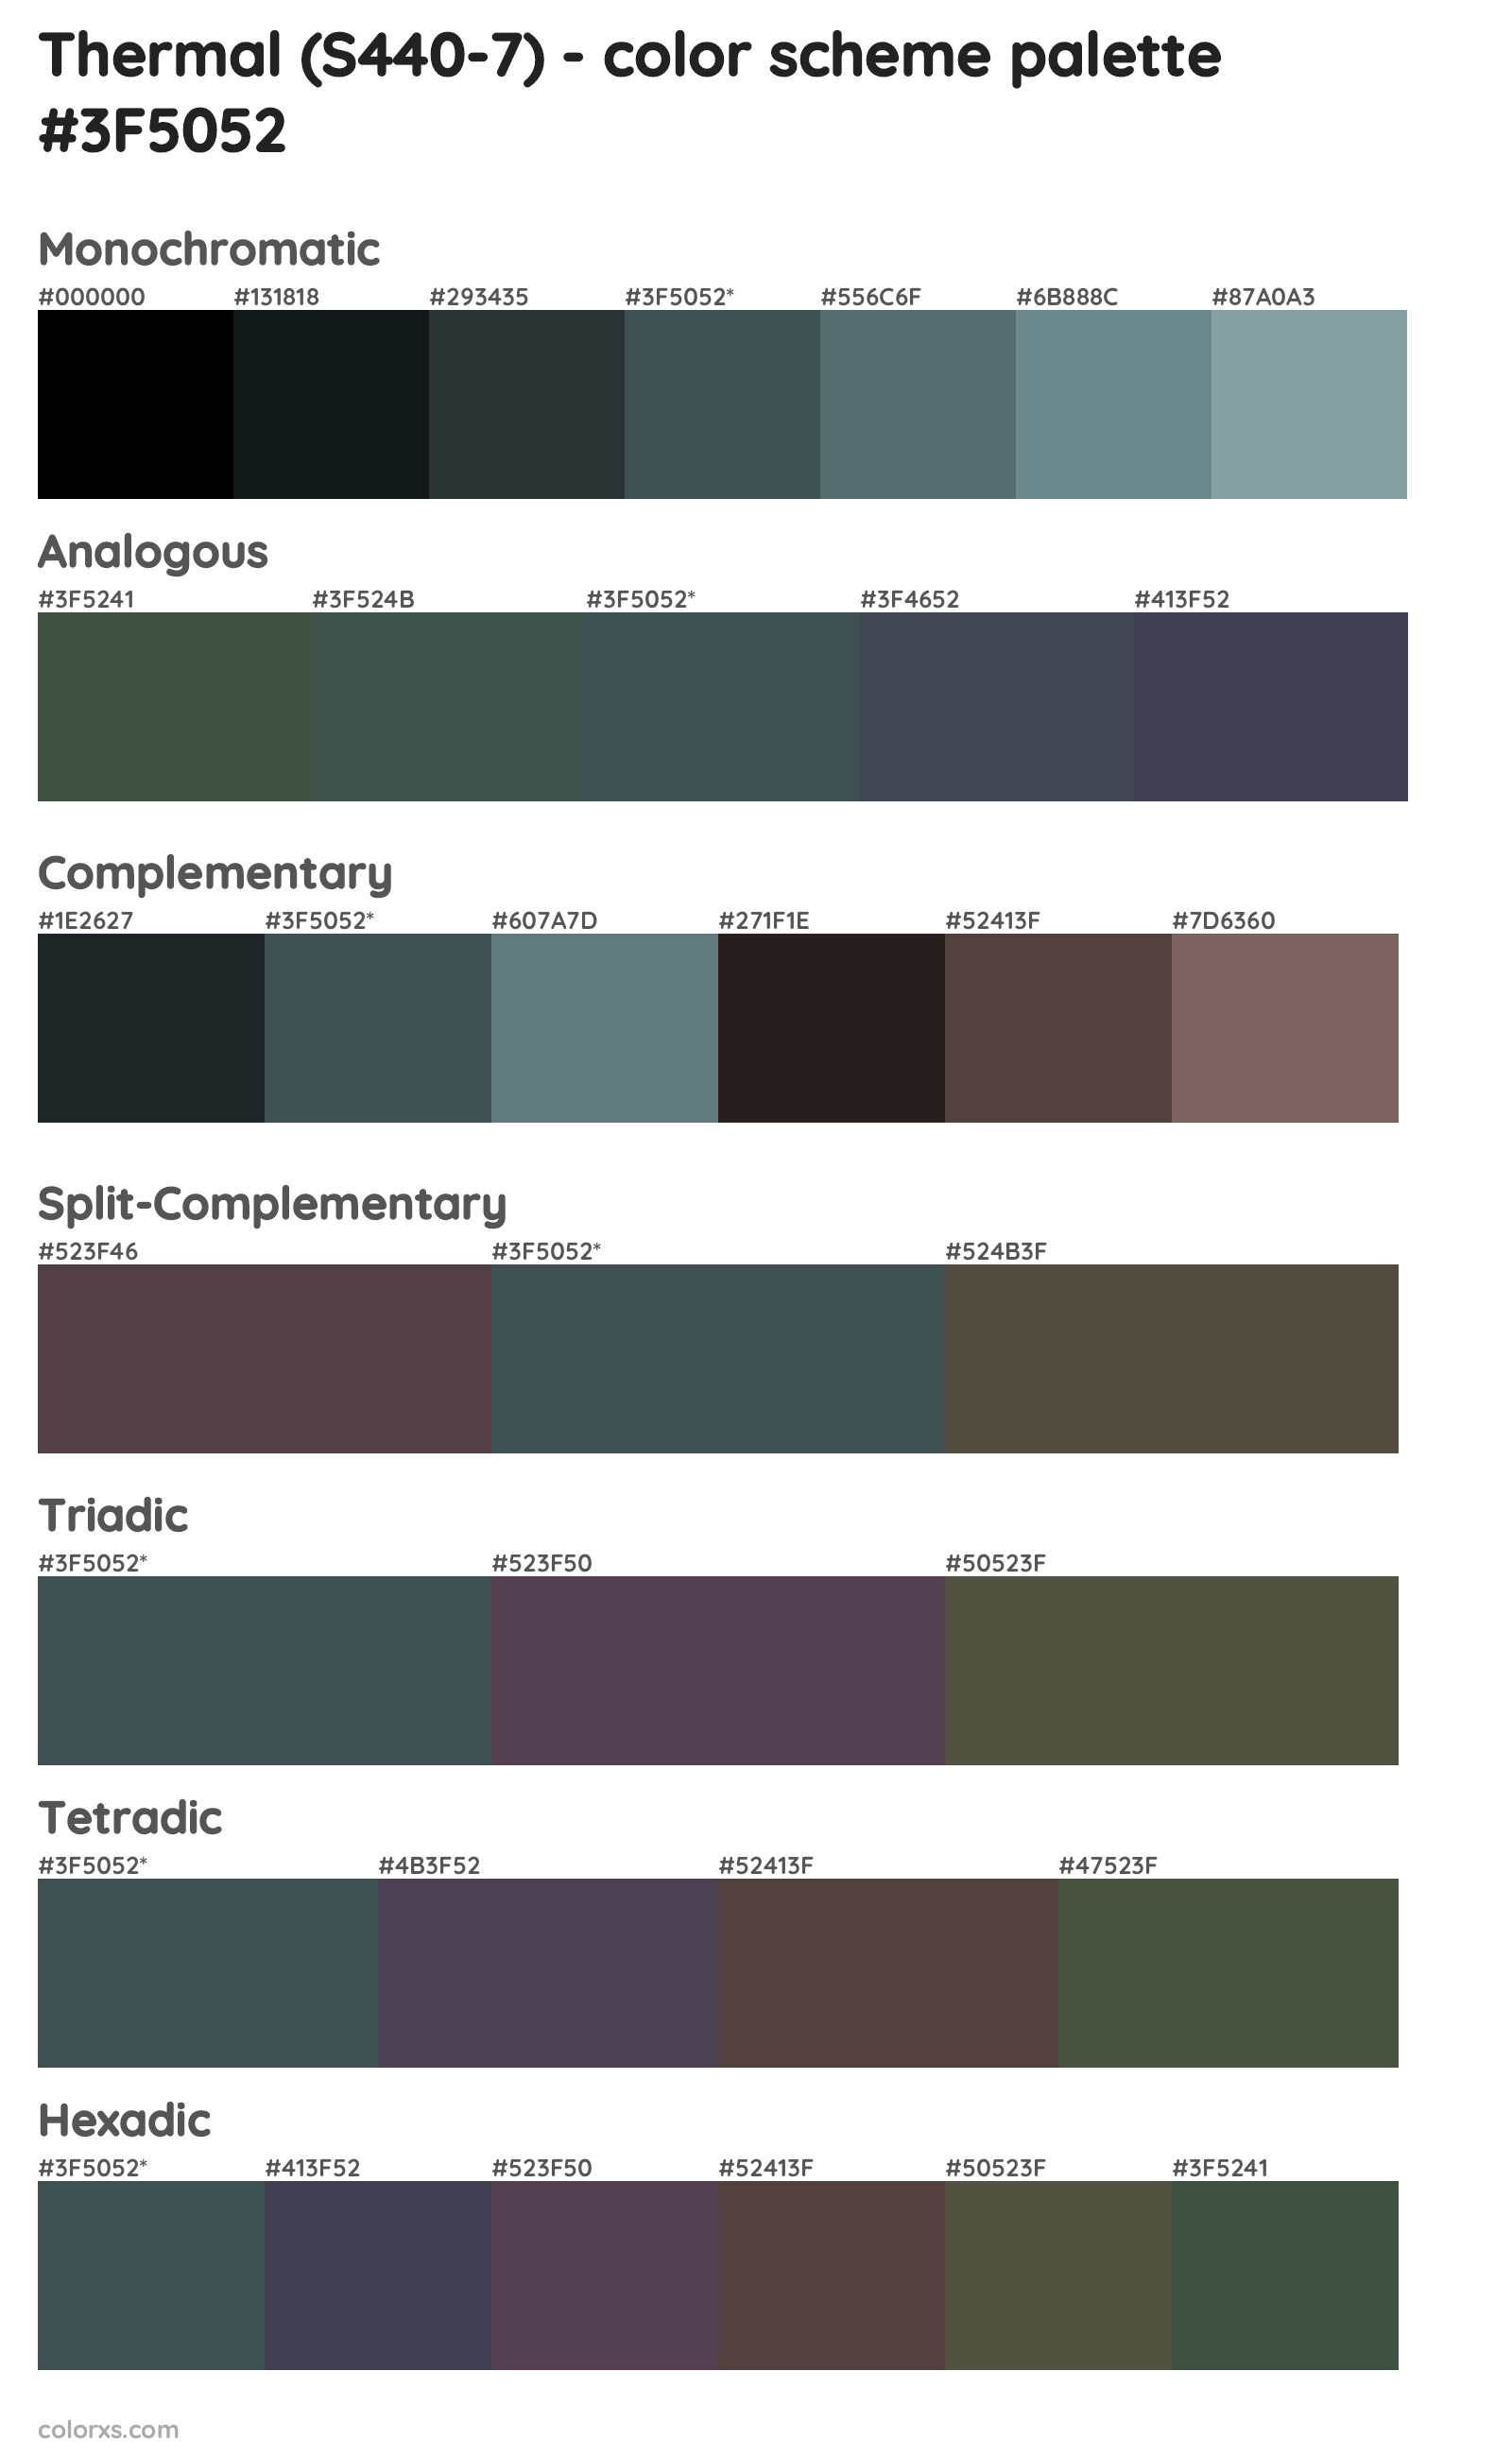 Thermal (S440-7) Color Scheme Palettes